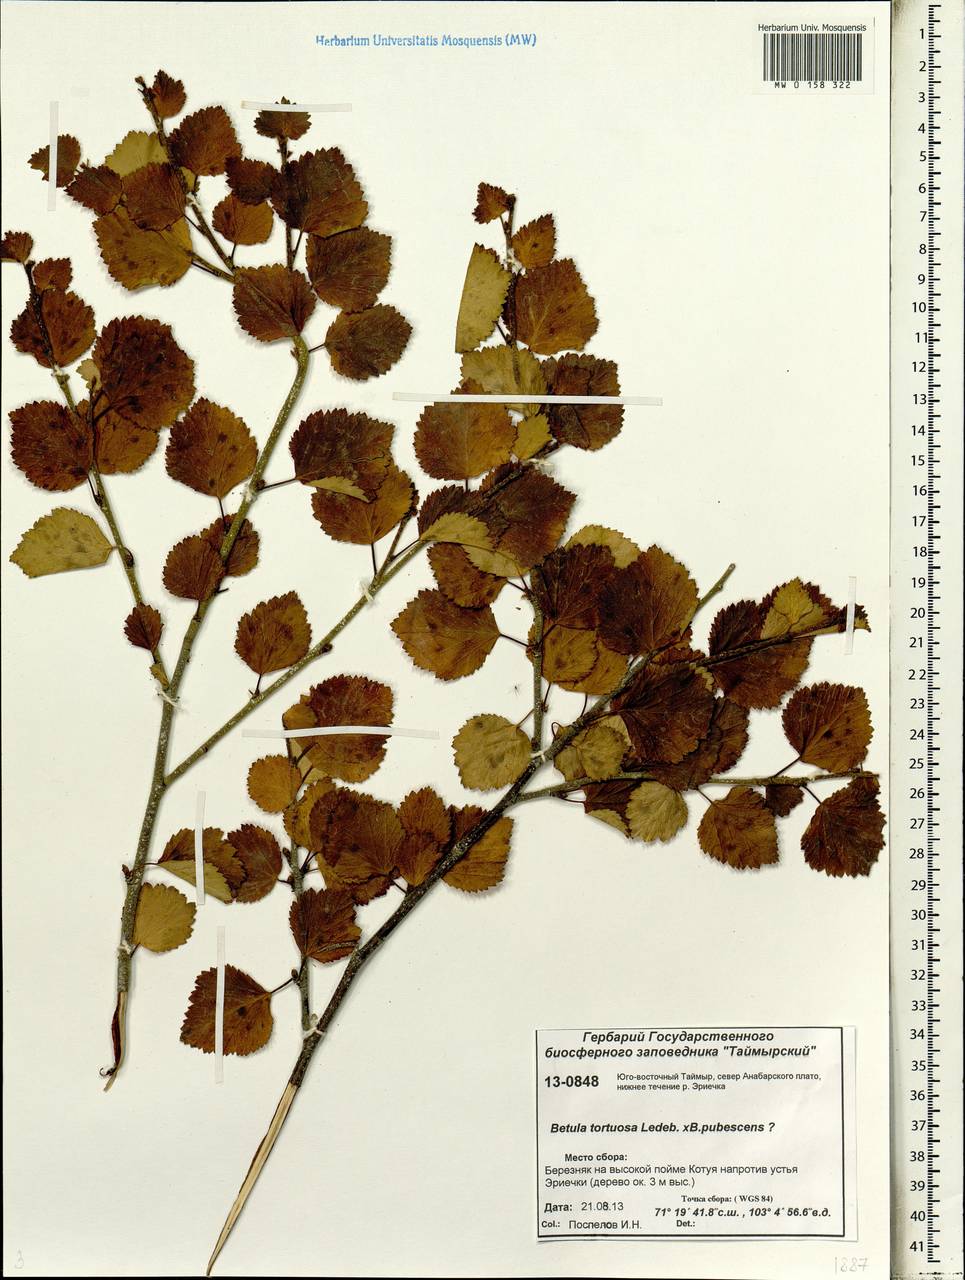 Betula tortuosa × pubescens, Siberia, Central Siberia (S3) (Russia)